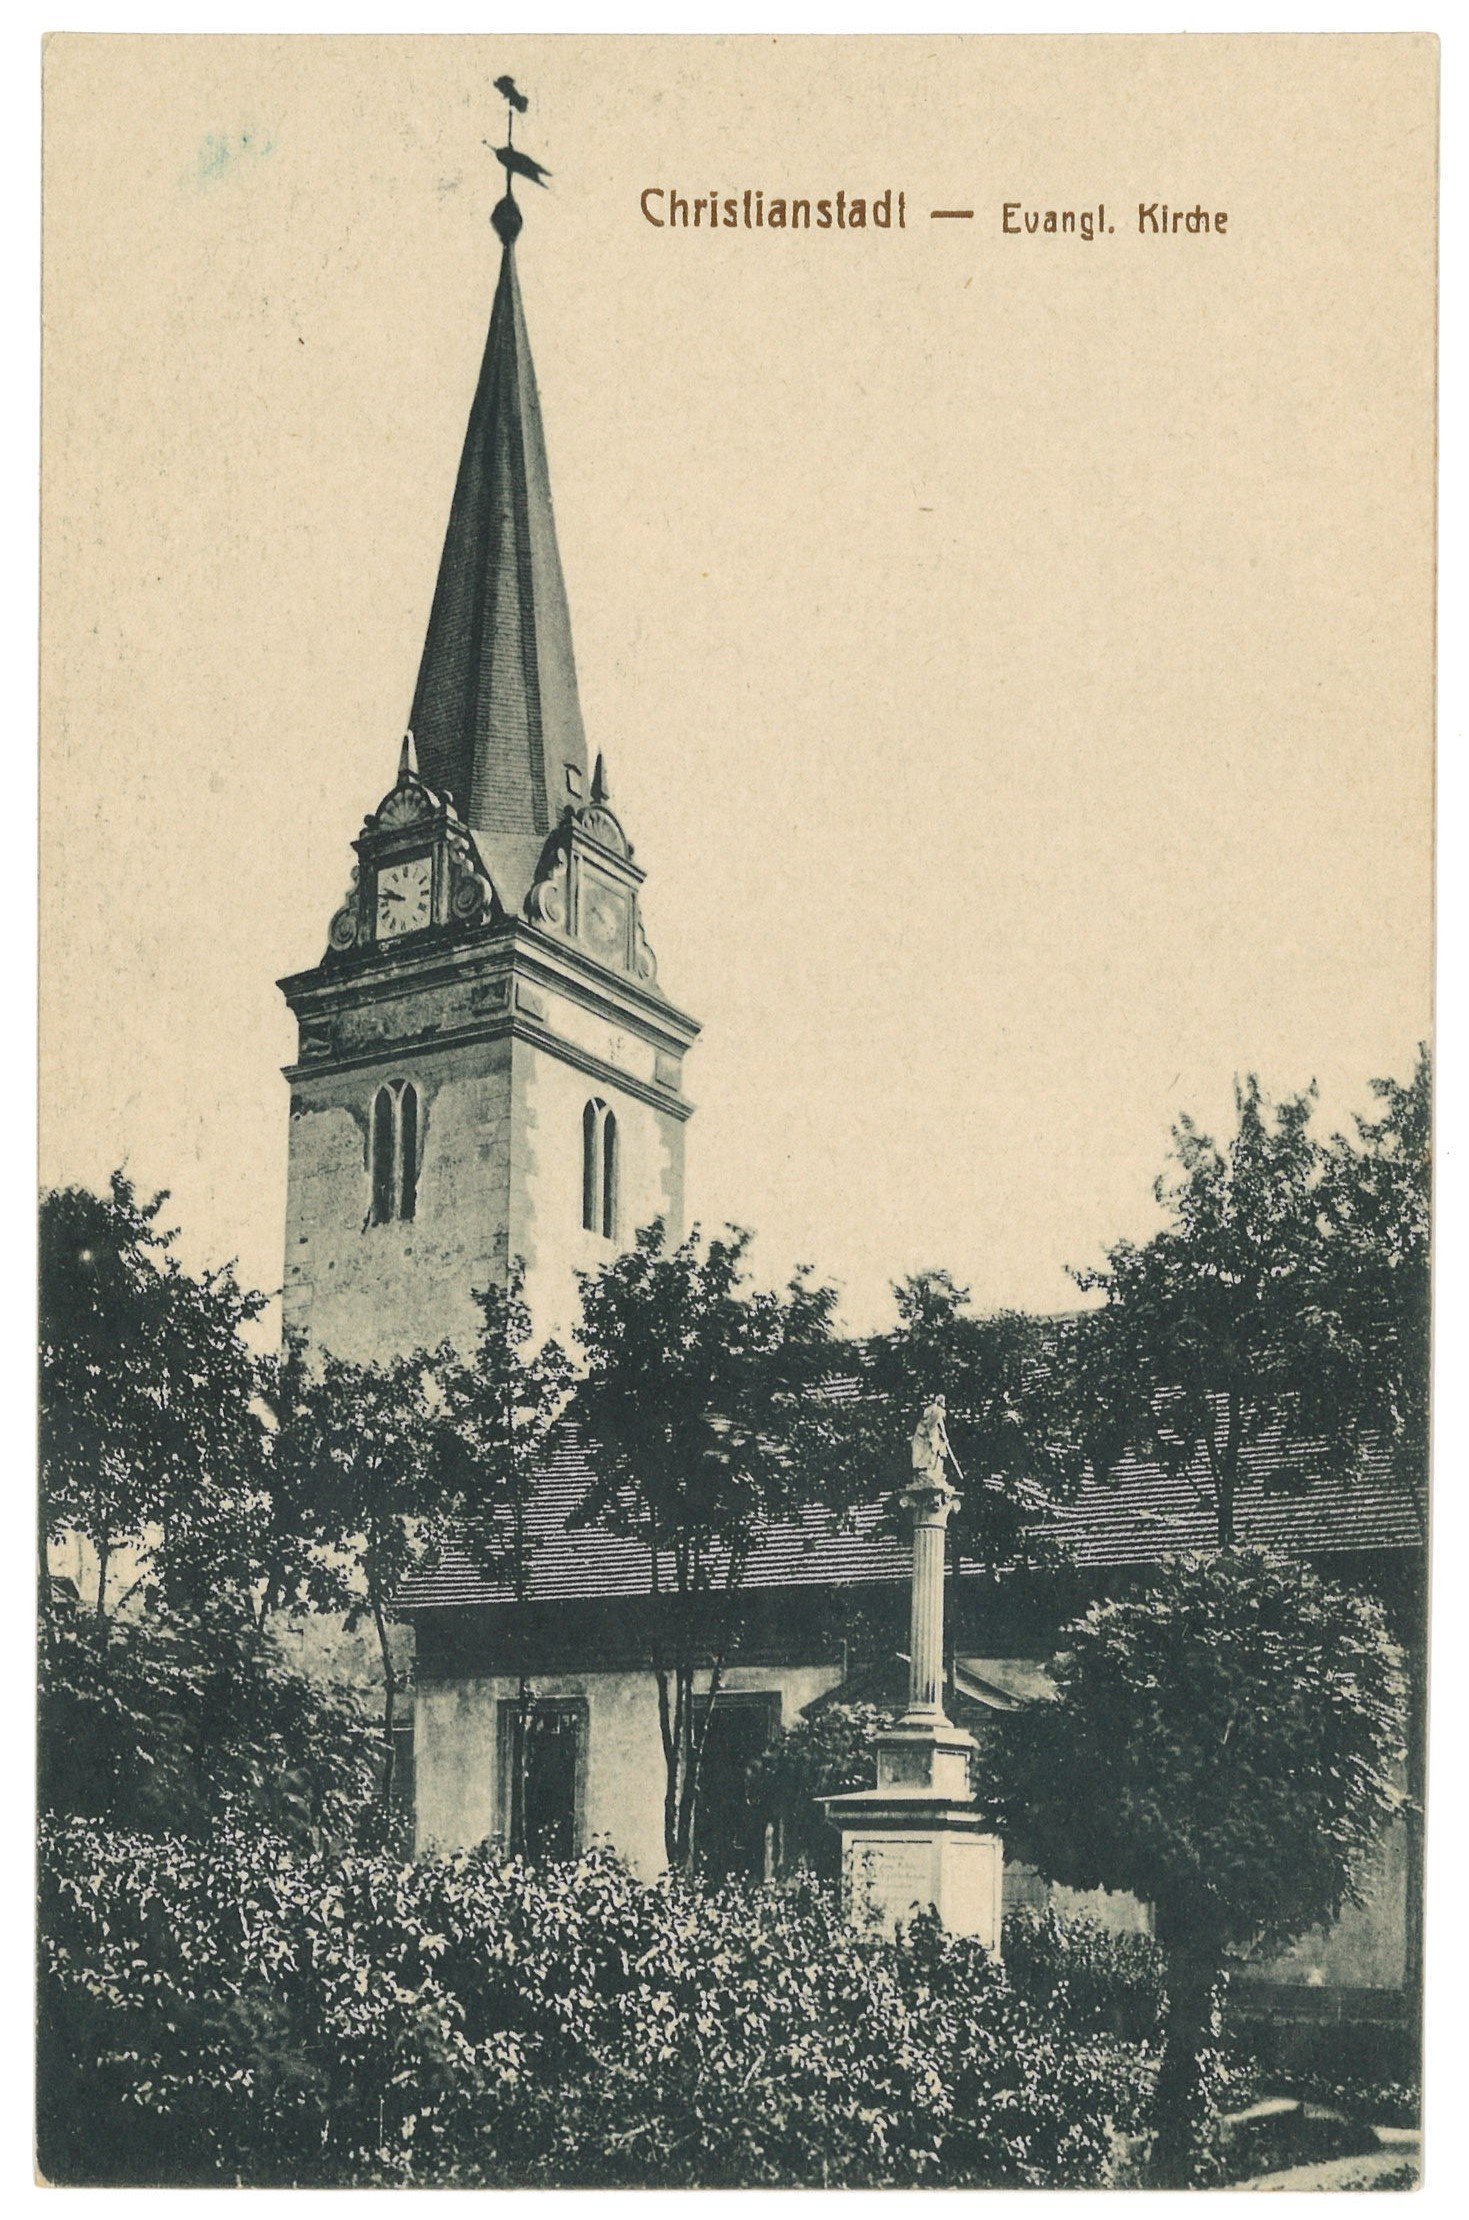 Christianstadt am Bober [Krzystkowice]: Evang. Kirche von Südosten (Landesgeschichtliche Vereinigung für die Mark Brandenburg e.V. CC BY)